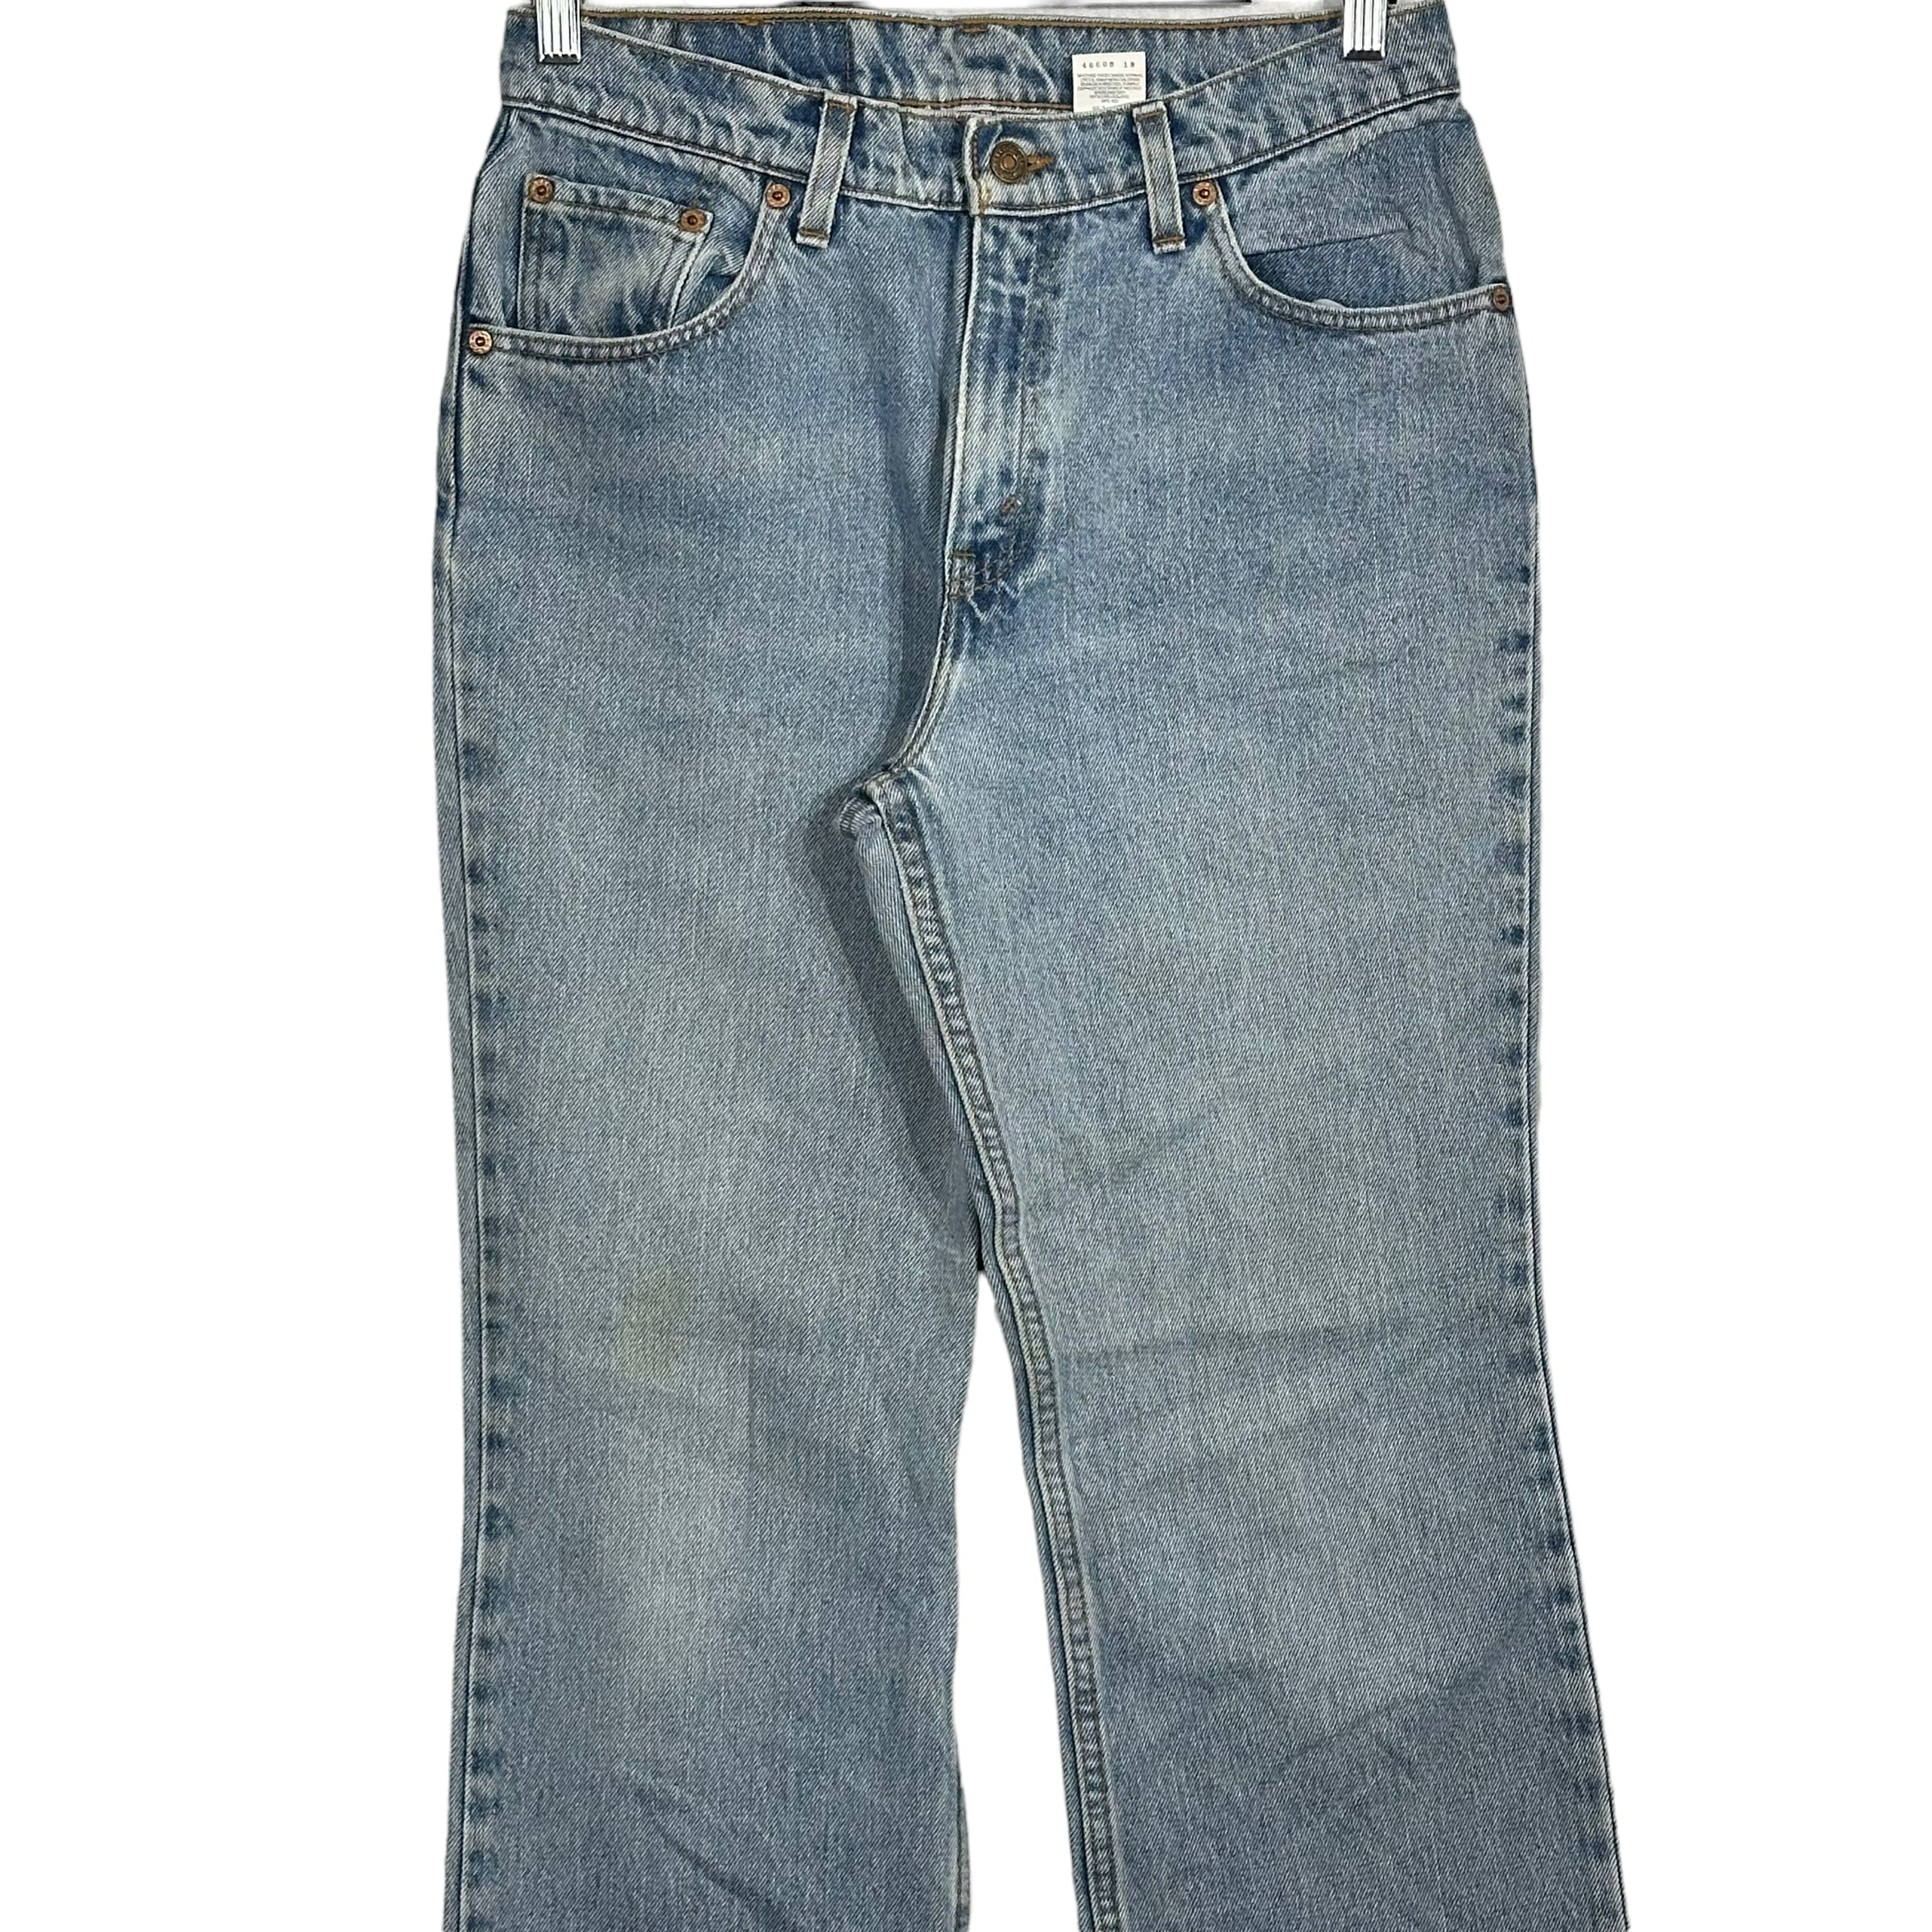 Vintage Levis 517 Boot Cut Jeans